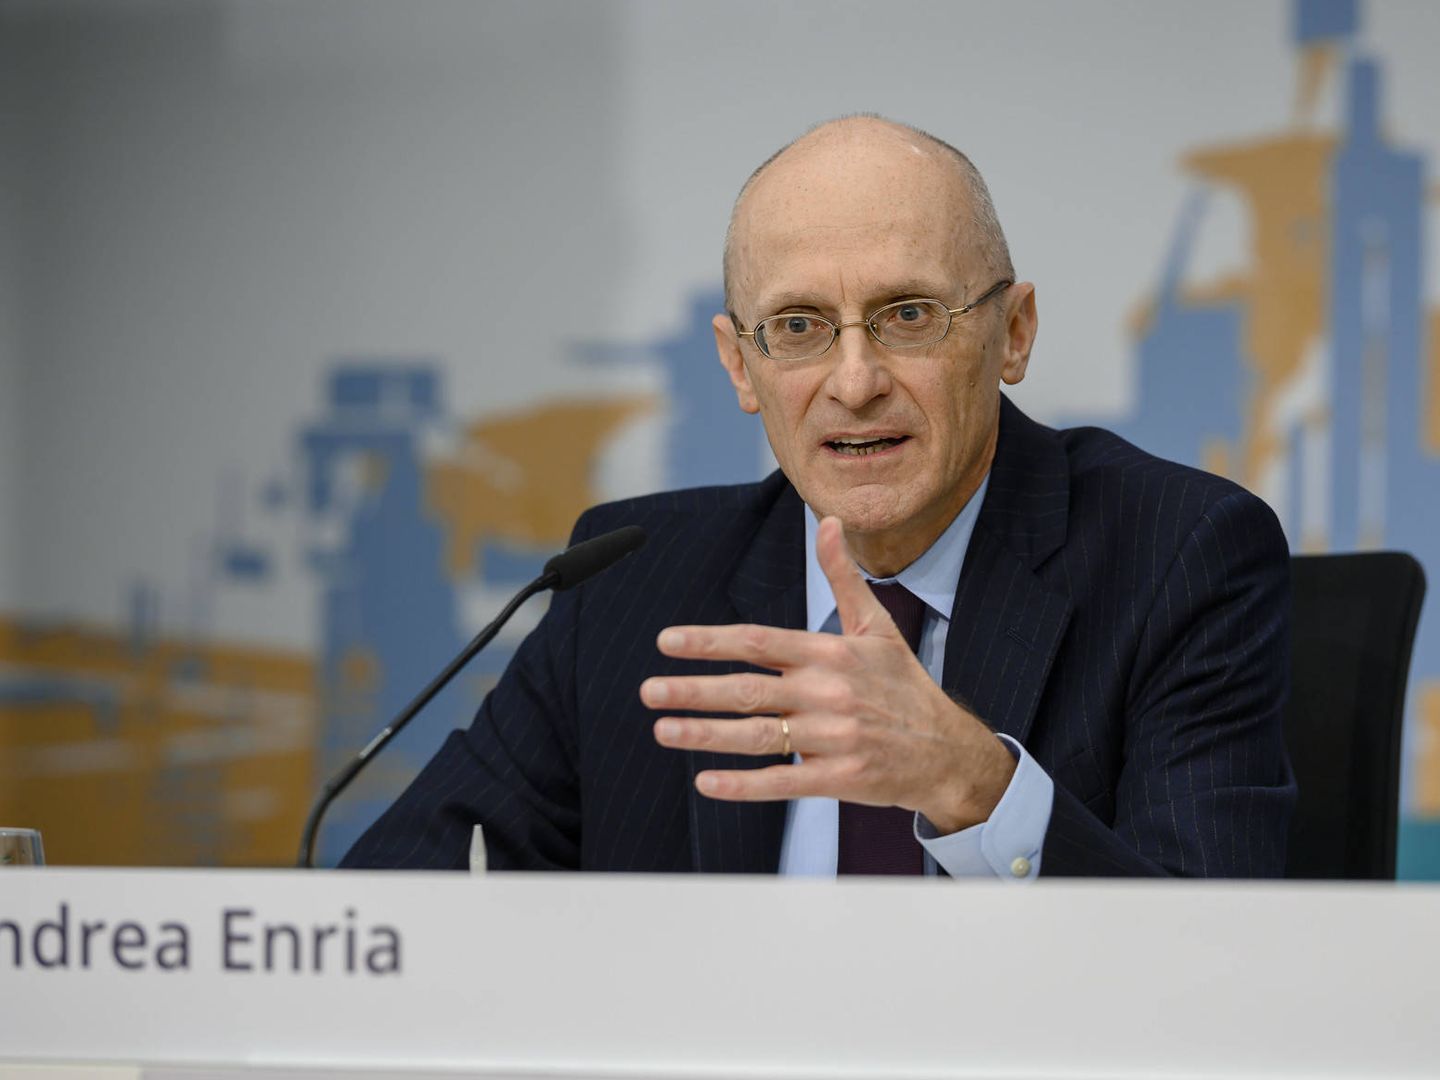 Andrea Enria, presidente del Mecanismo Único de Supervisión (MUS), del BCE. (BCE)